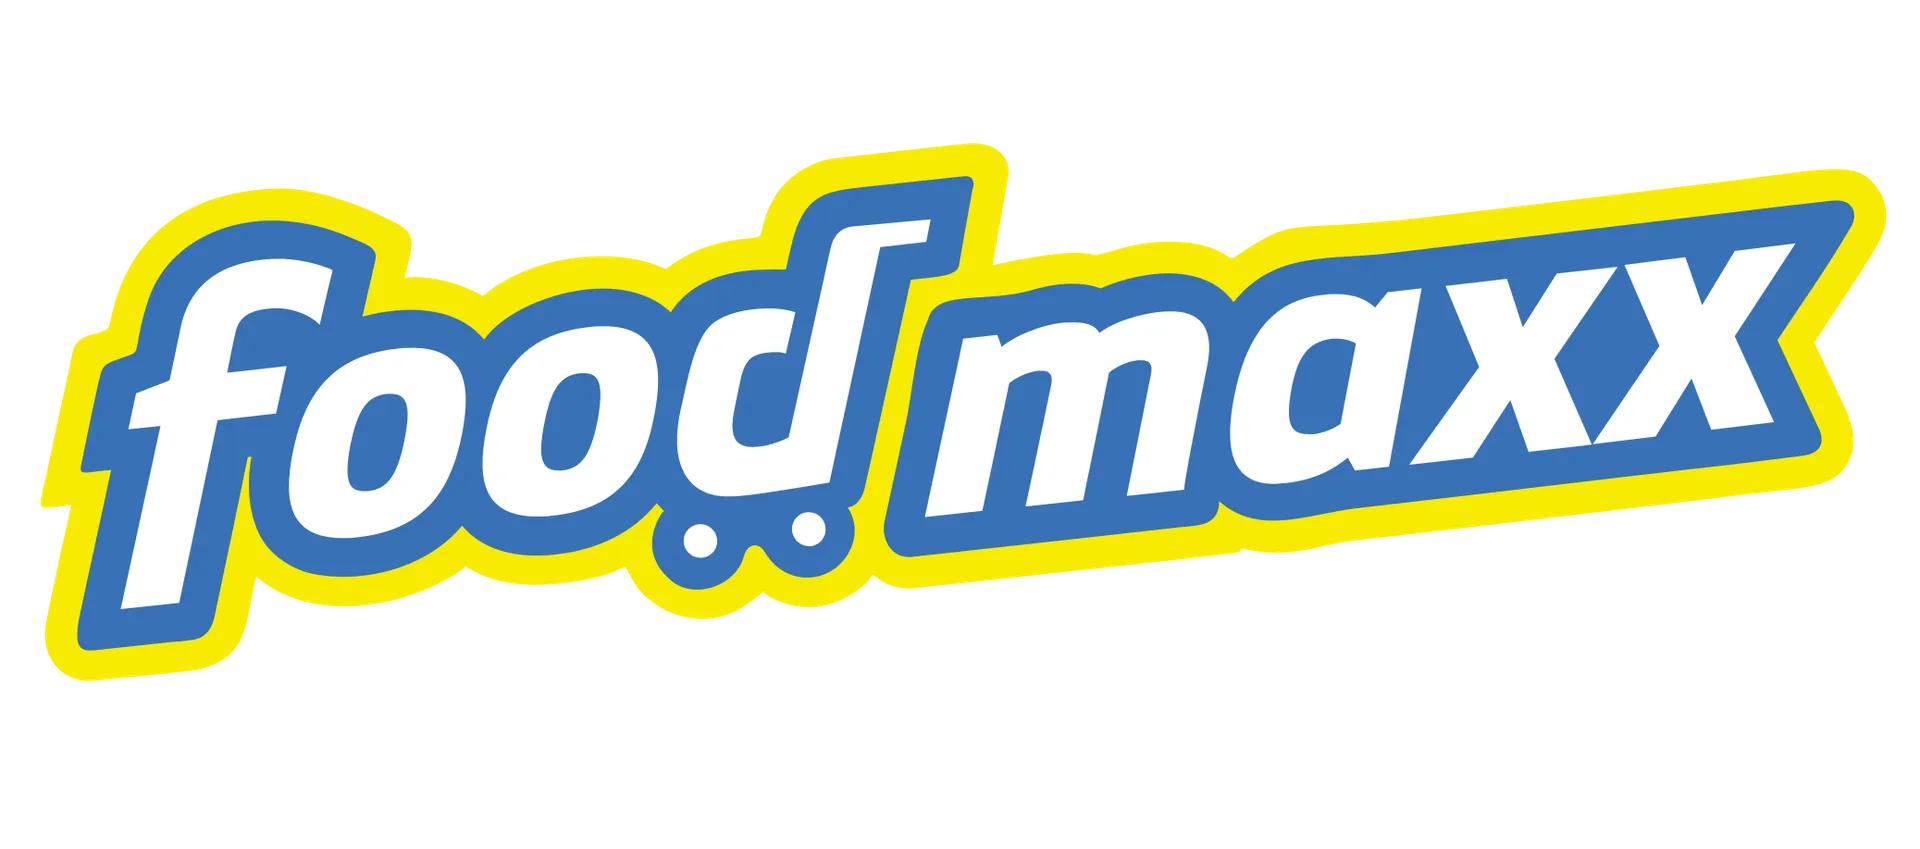 FOODMAXX logo. Current weekly ad